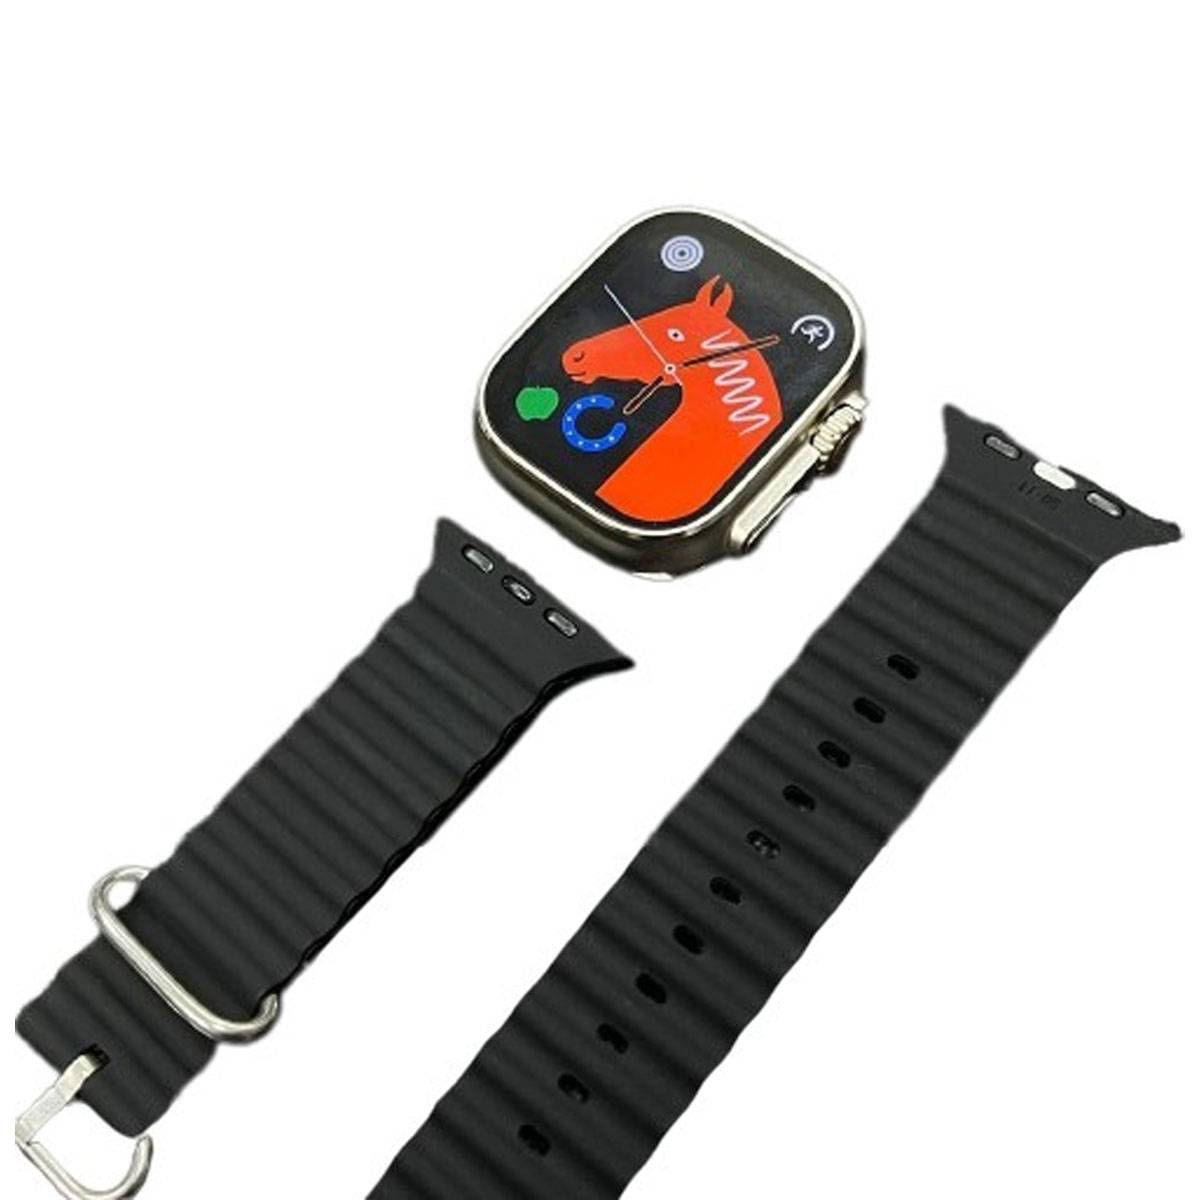 HK9 Ultra 2 Smart Watch